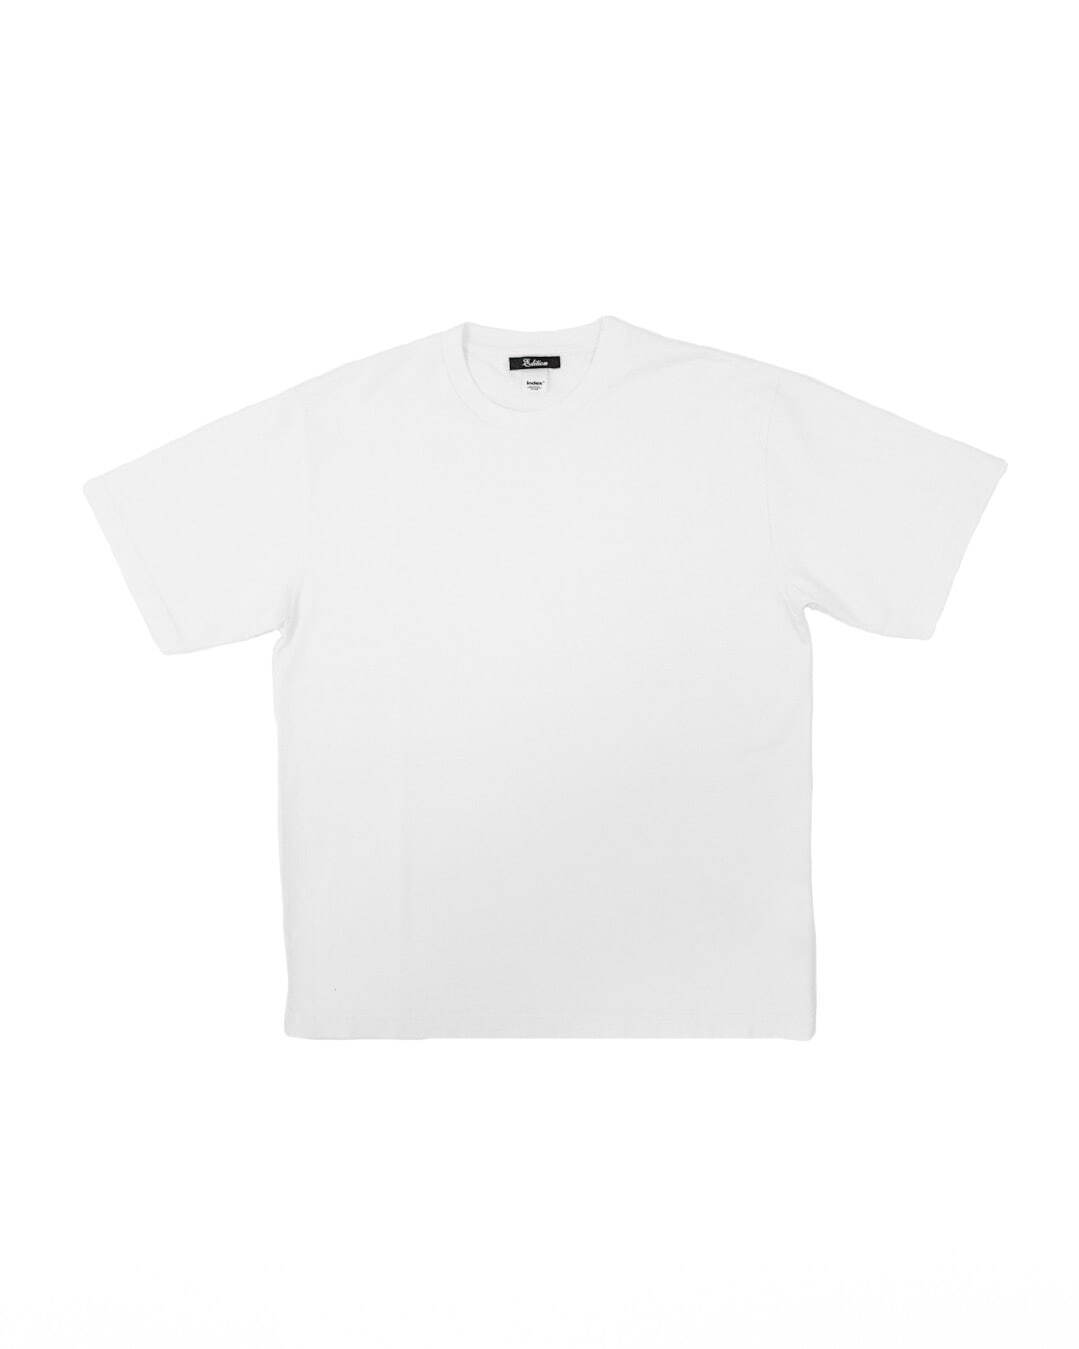 インデックス エディション別注Tシャツ 9,900円